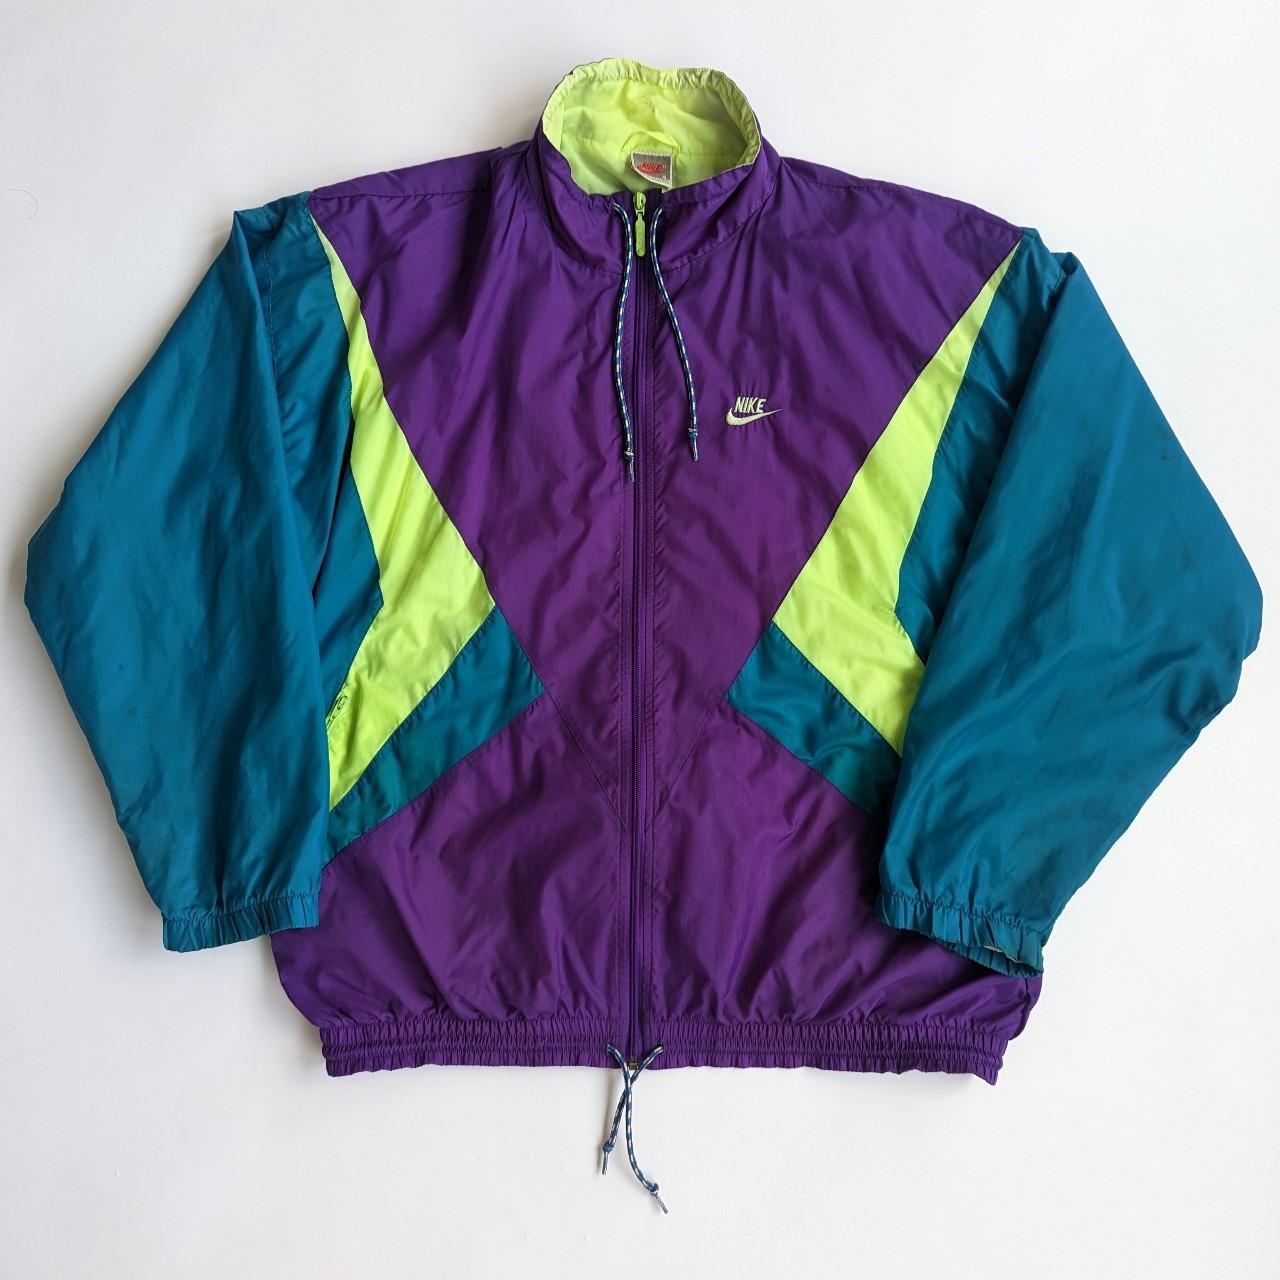 Vintage Nike Windbreaker Shell Jacket Size:... - Depop